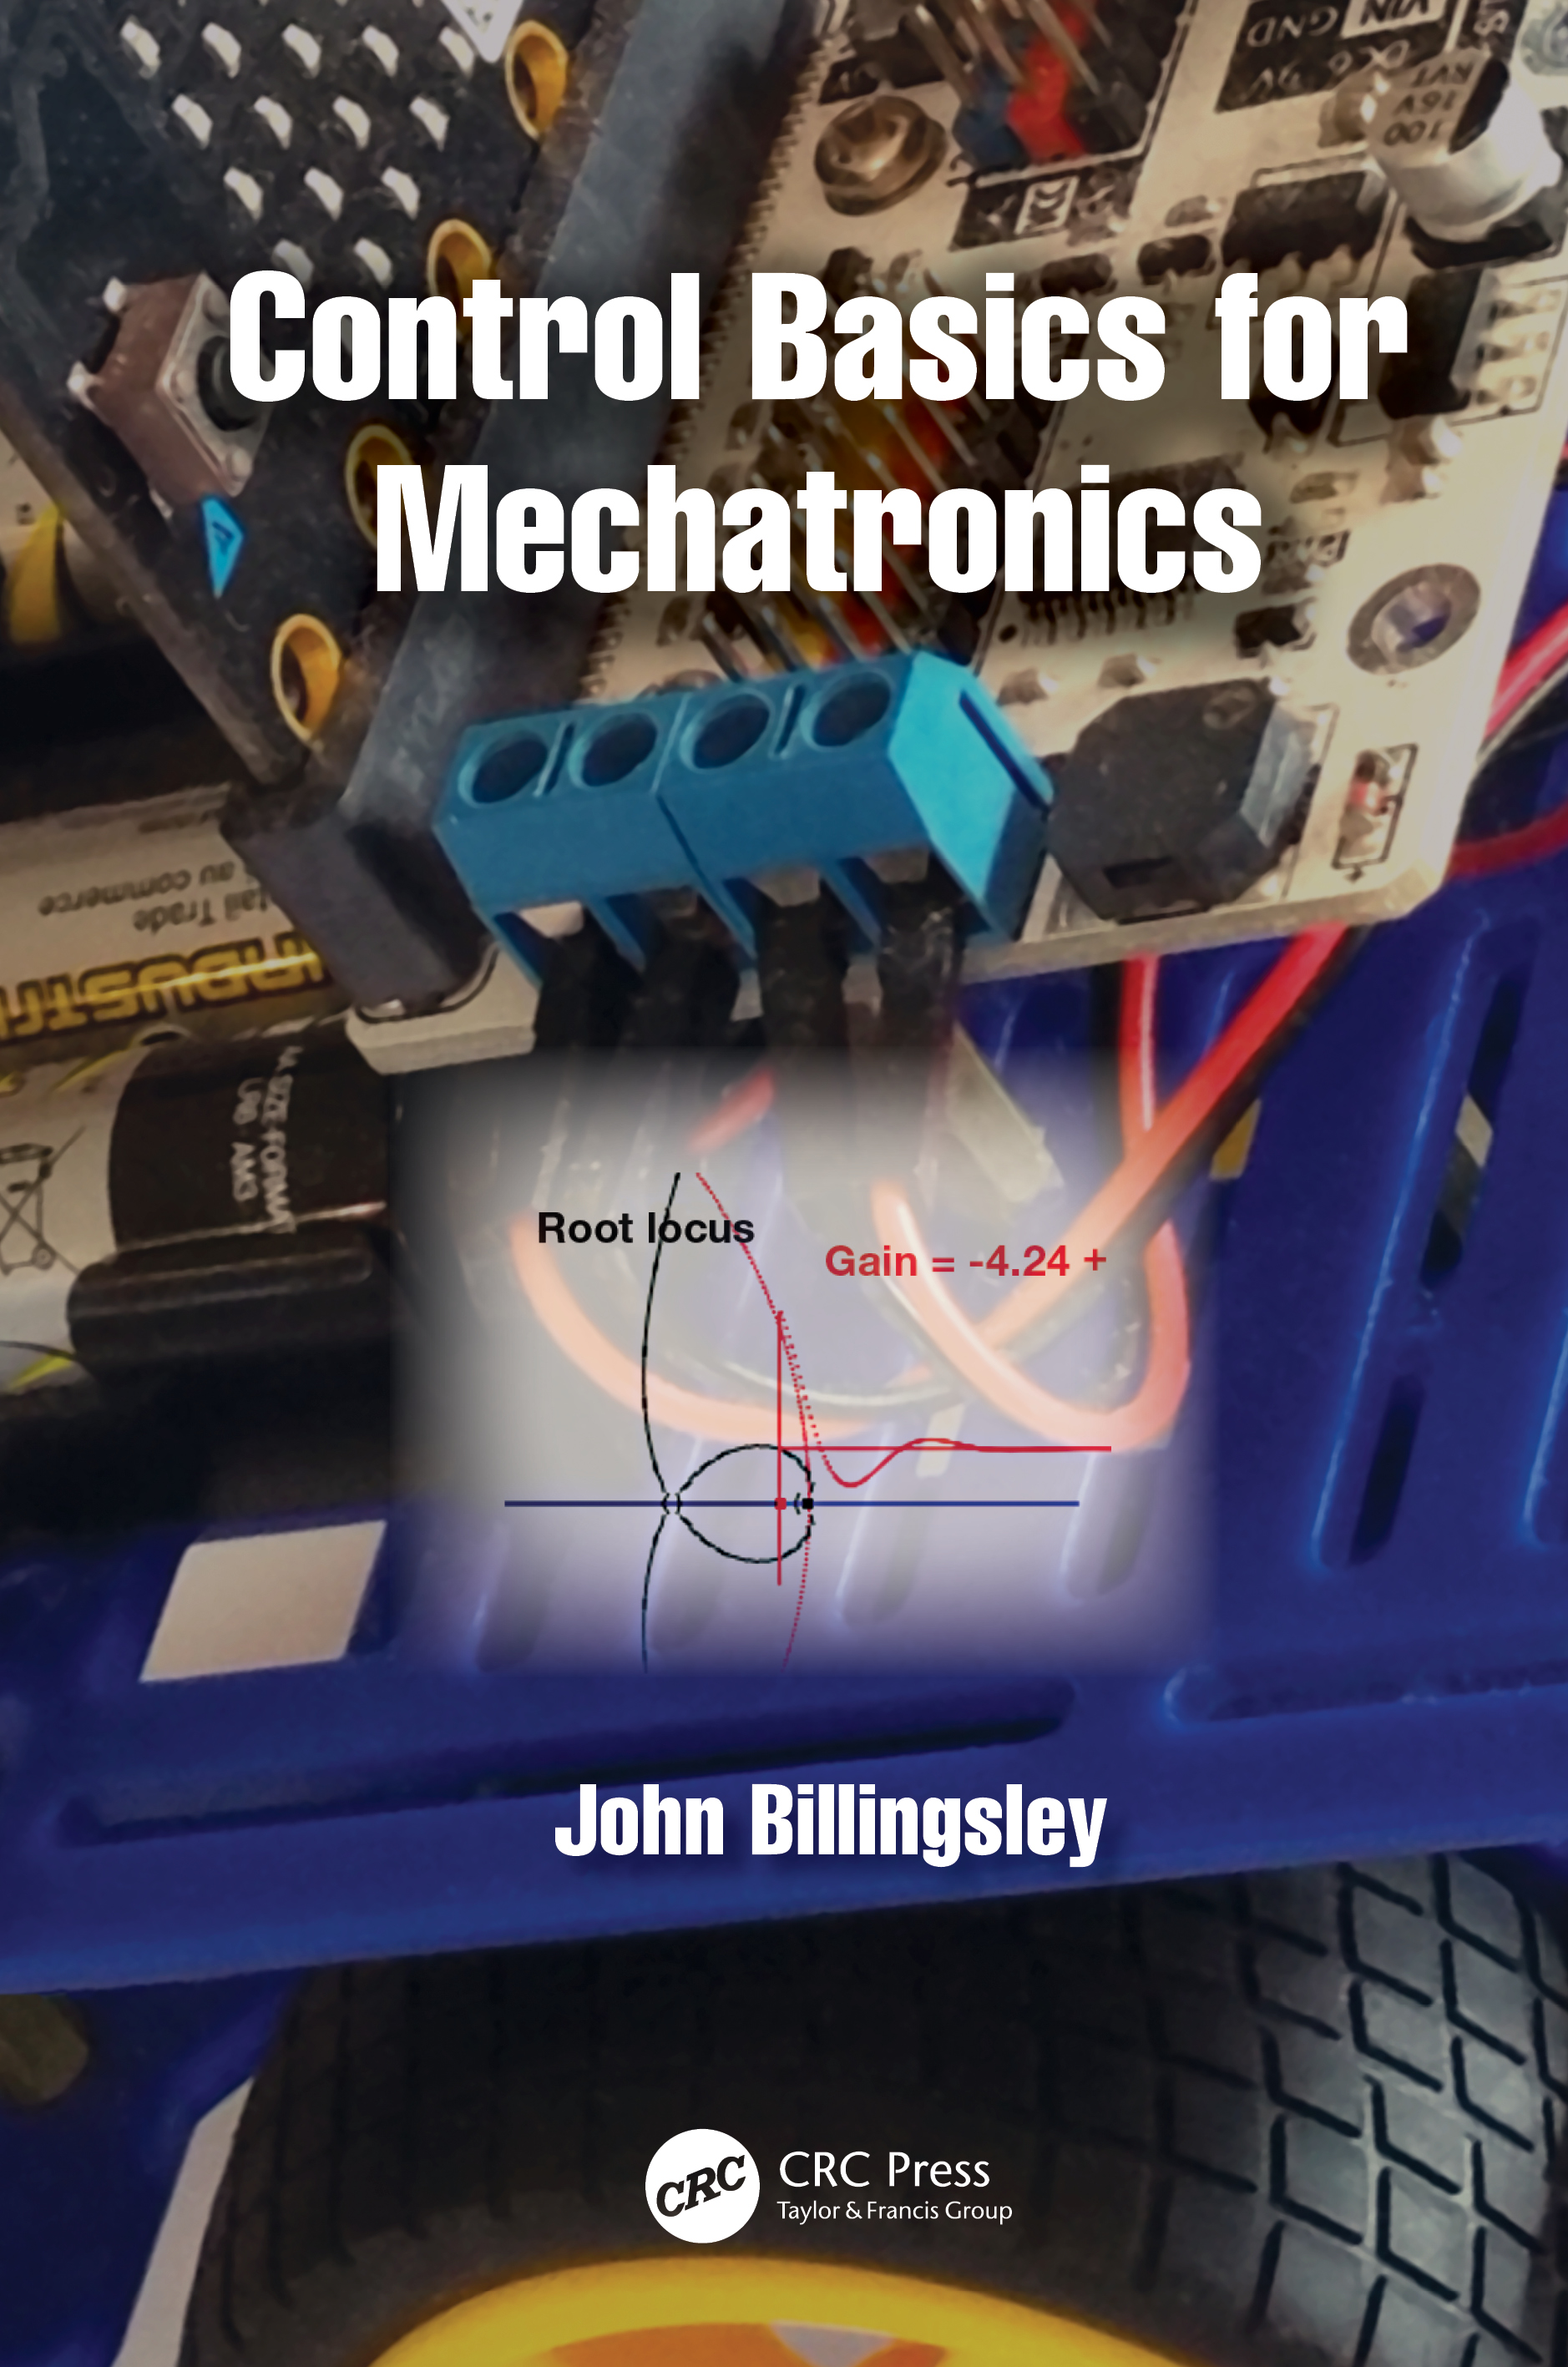 Control Basics for Mechatronics by John Billingsley